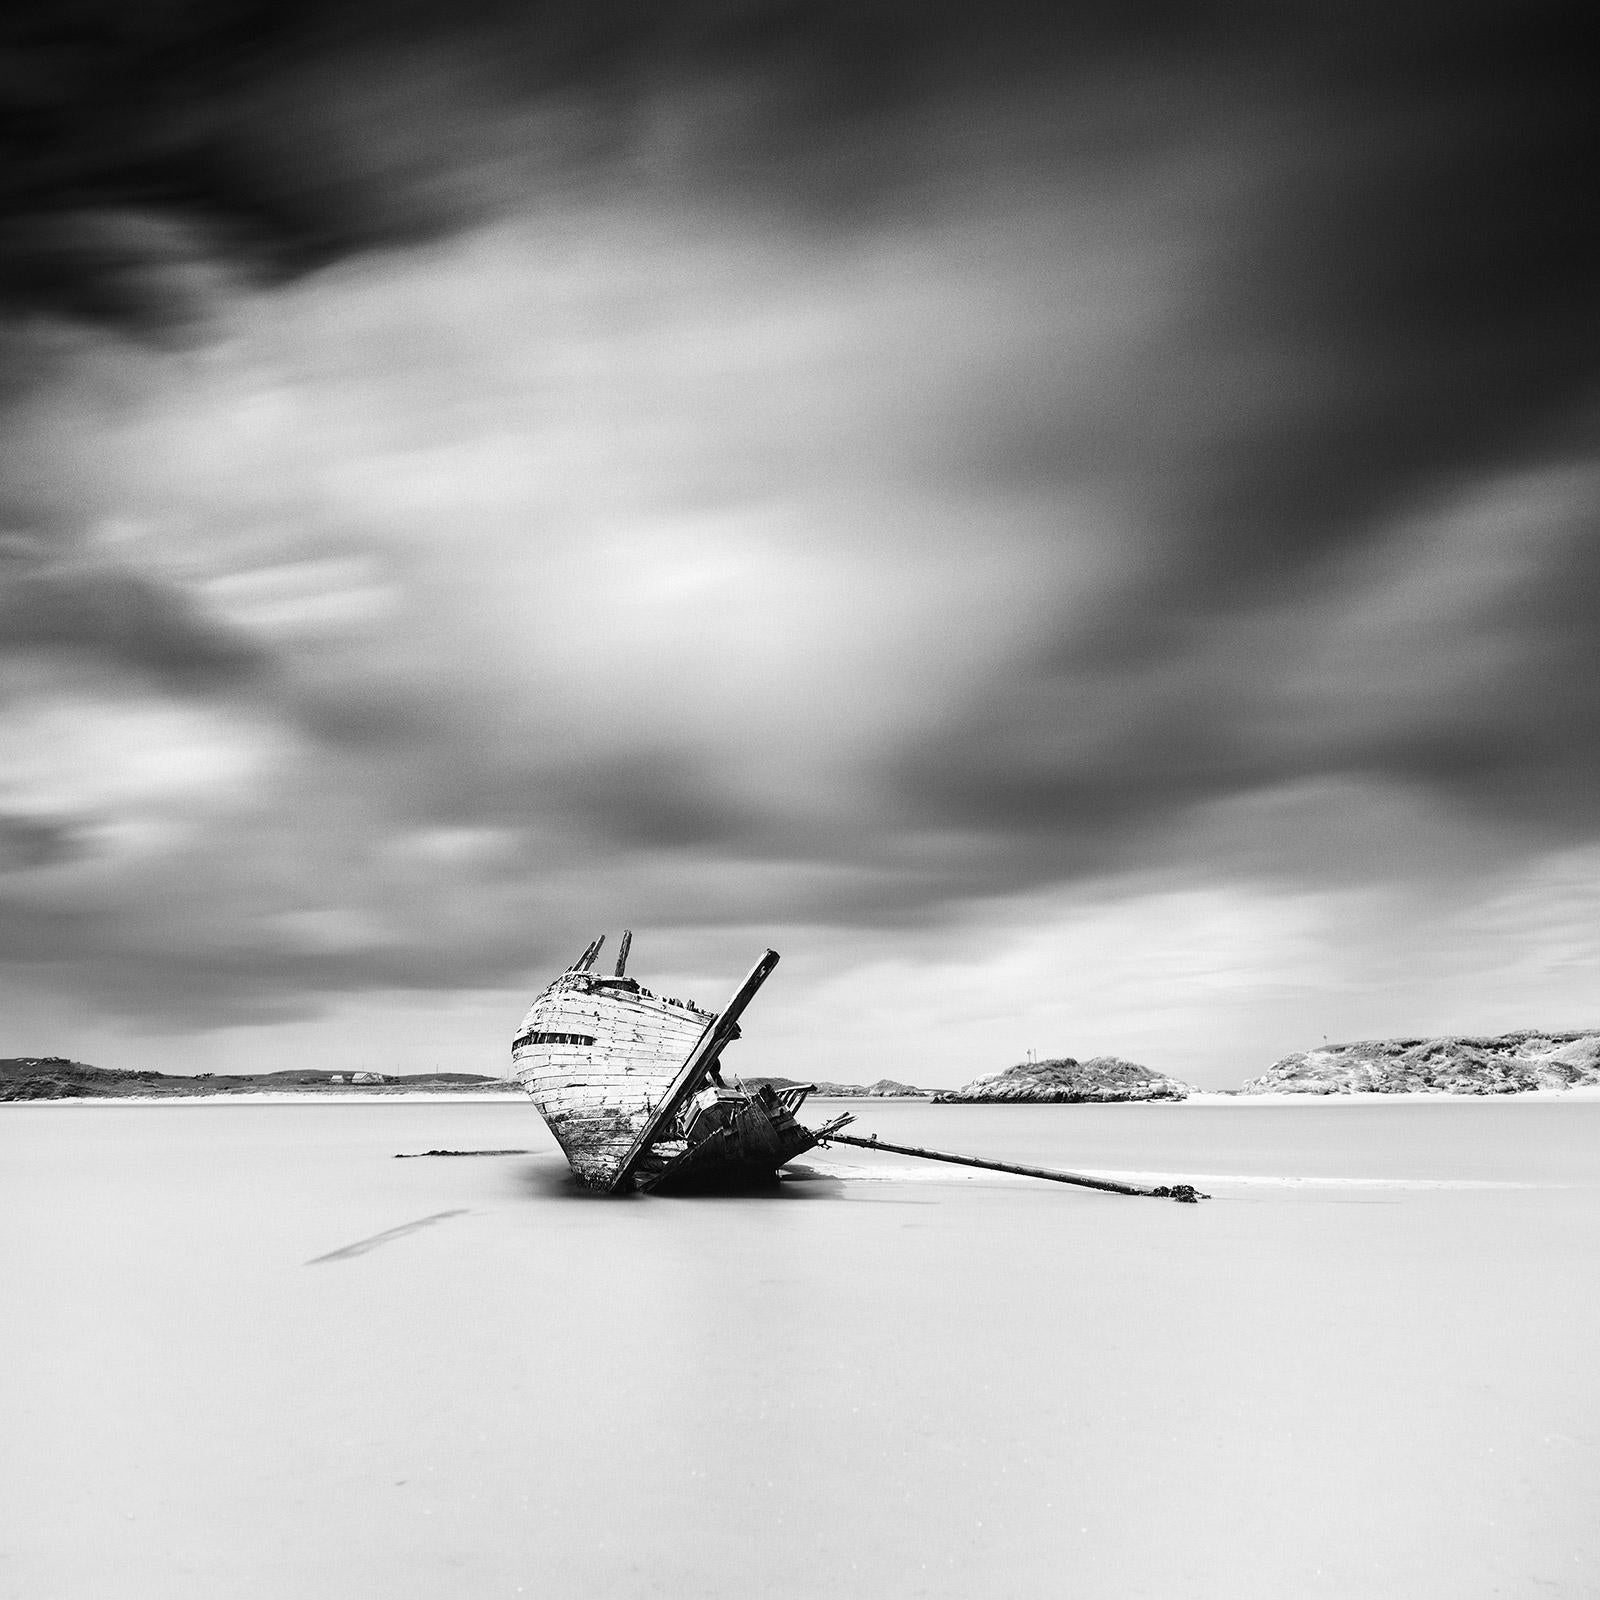 Gerald Berghammer Landscape Photograph - Bad Eddies Boat, Irish coast, Ireland, black and white photography, landscape